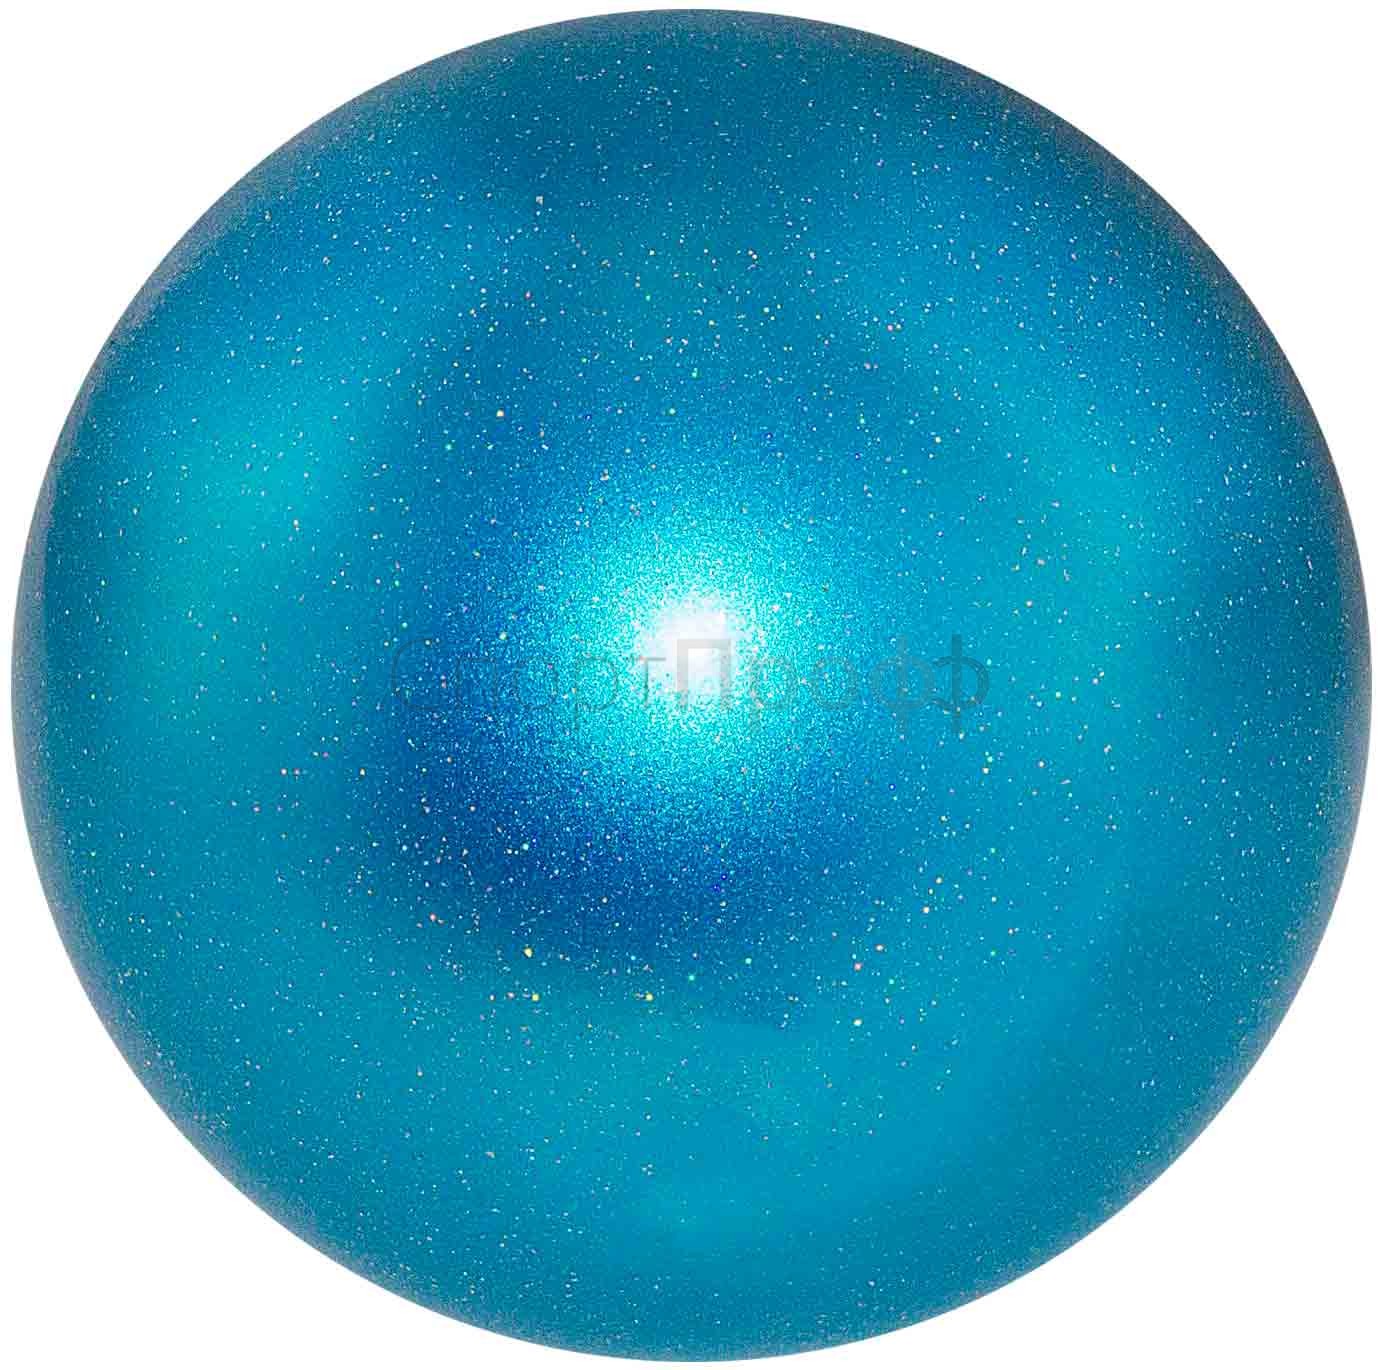 Мяч CHACOTT Prism юниор 17 см. 625 (синяя свежесть) для художественной гимнастики